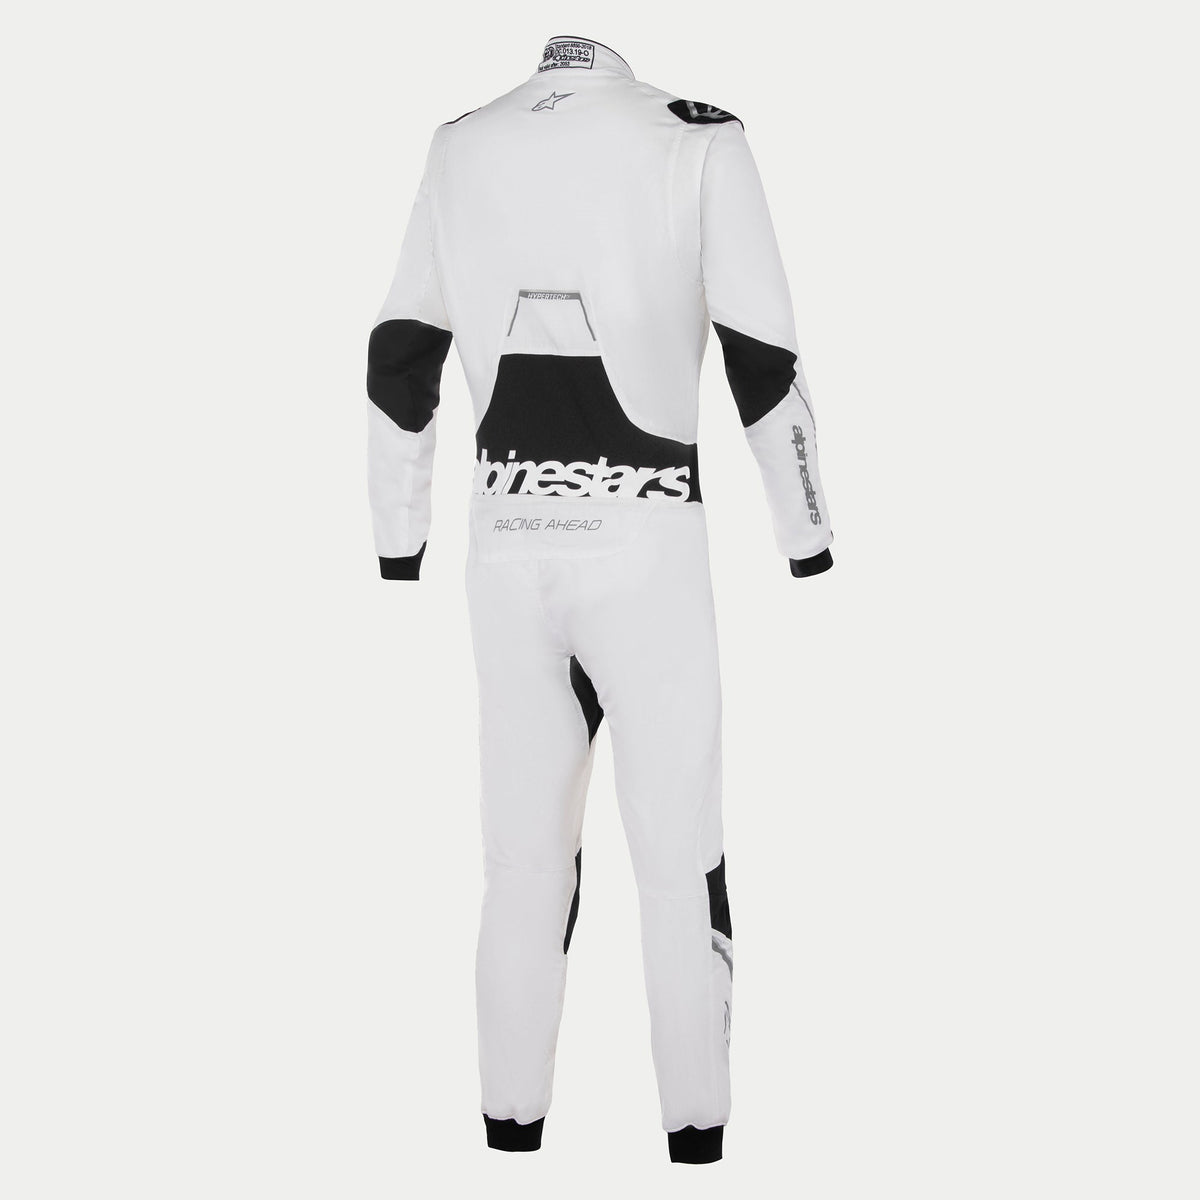 Alpinestars Hypertech V3 Suit FIA - White/Black/Silver